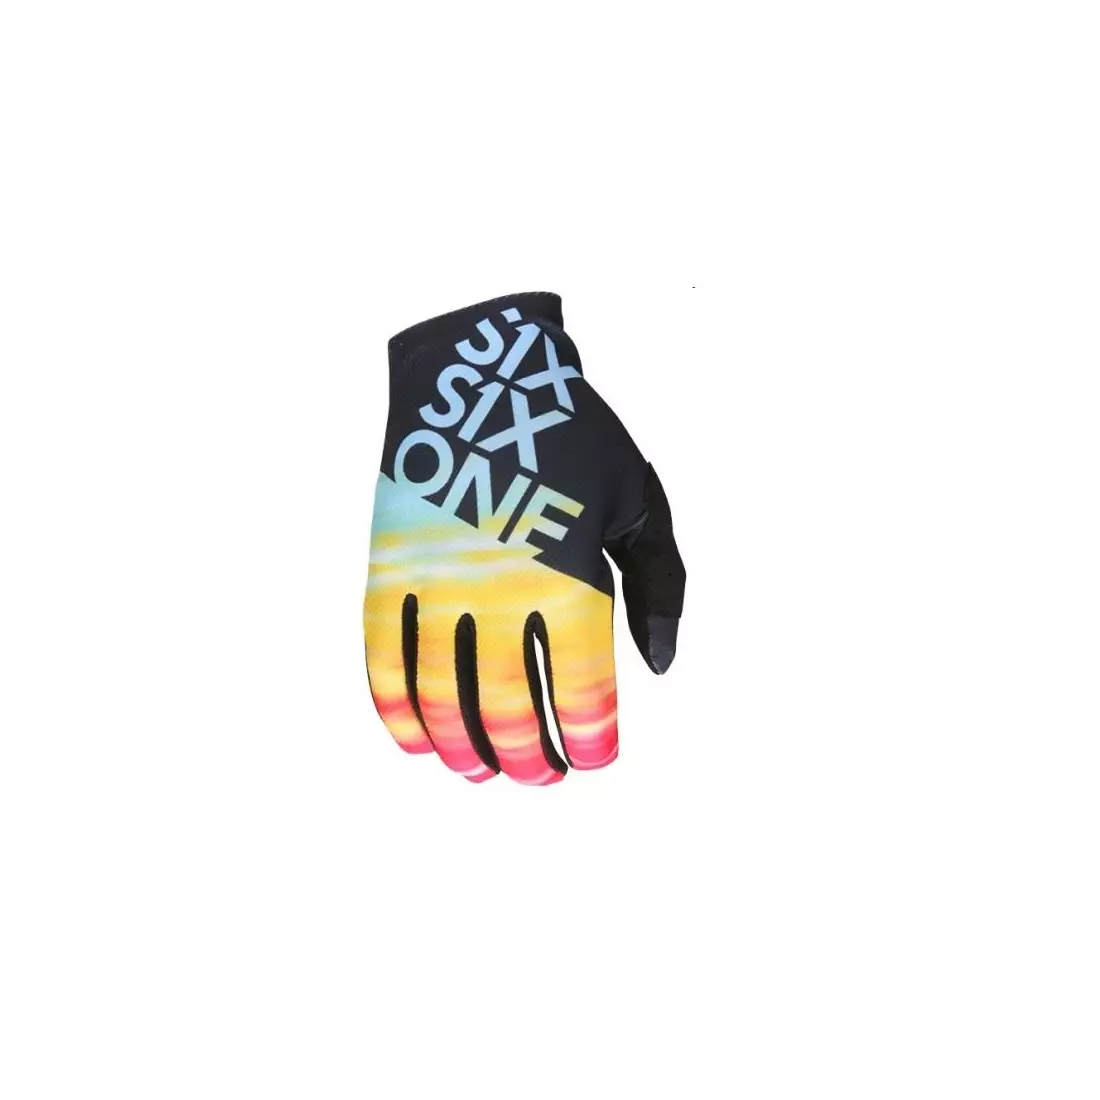 661 cycling gloves RAJI long finger tie dye